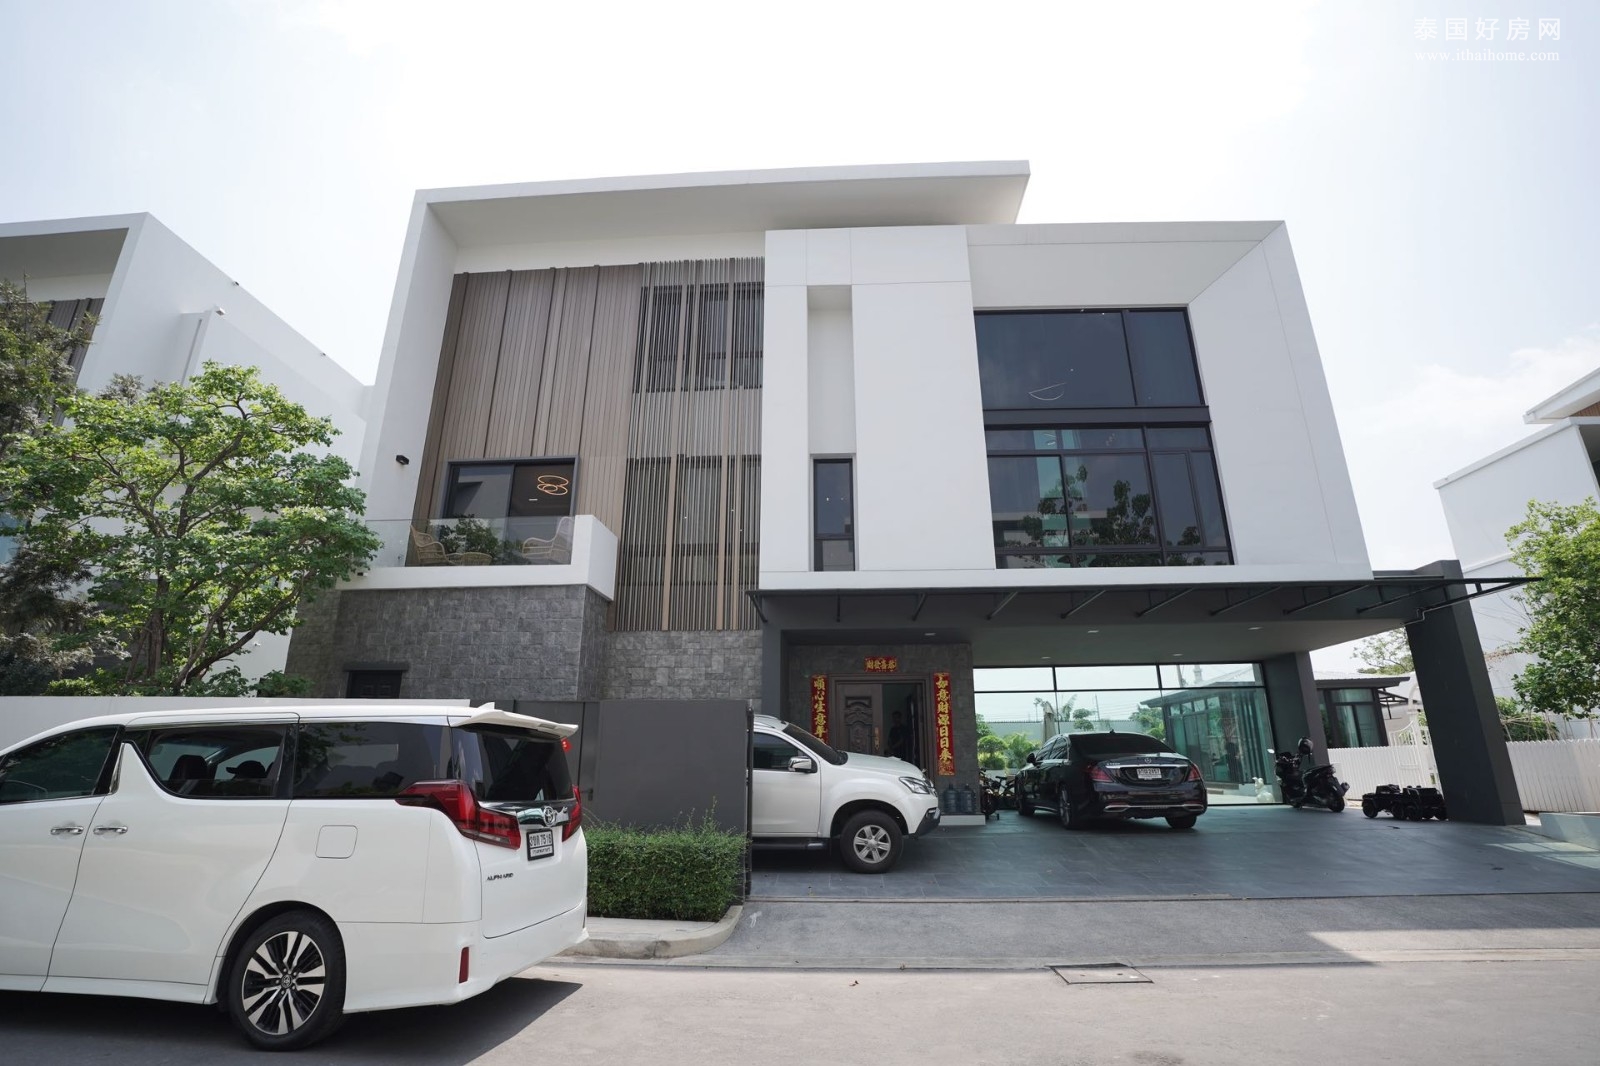 沙攀松区 | Nantawan Rama 9 – Srinakarin 豪华独栋别墅出售 6房 1,000平米 7500万泰铢